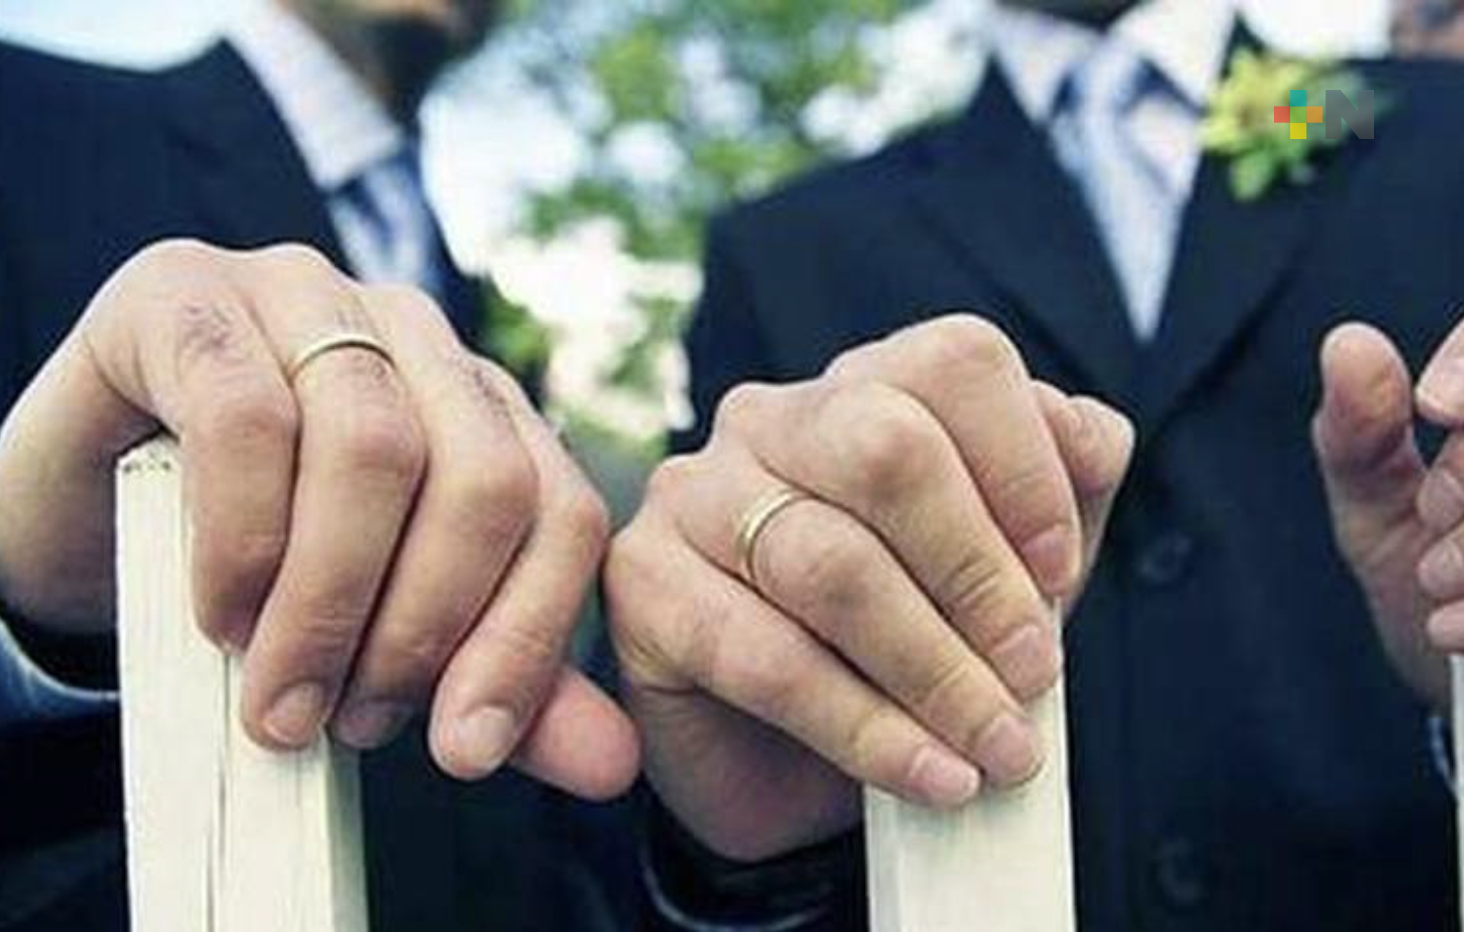 Queda legalizado el matrimonio igualitario en Veracruz